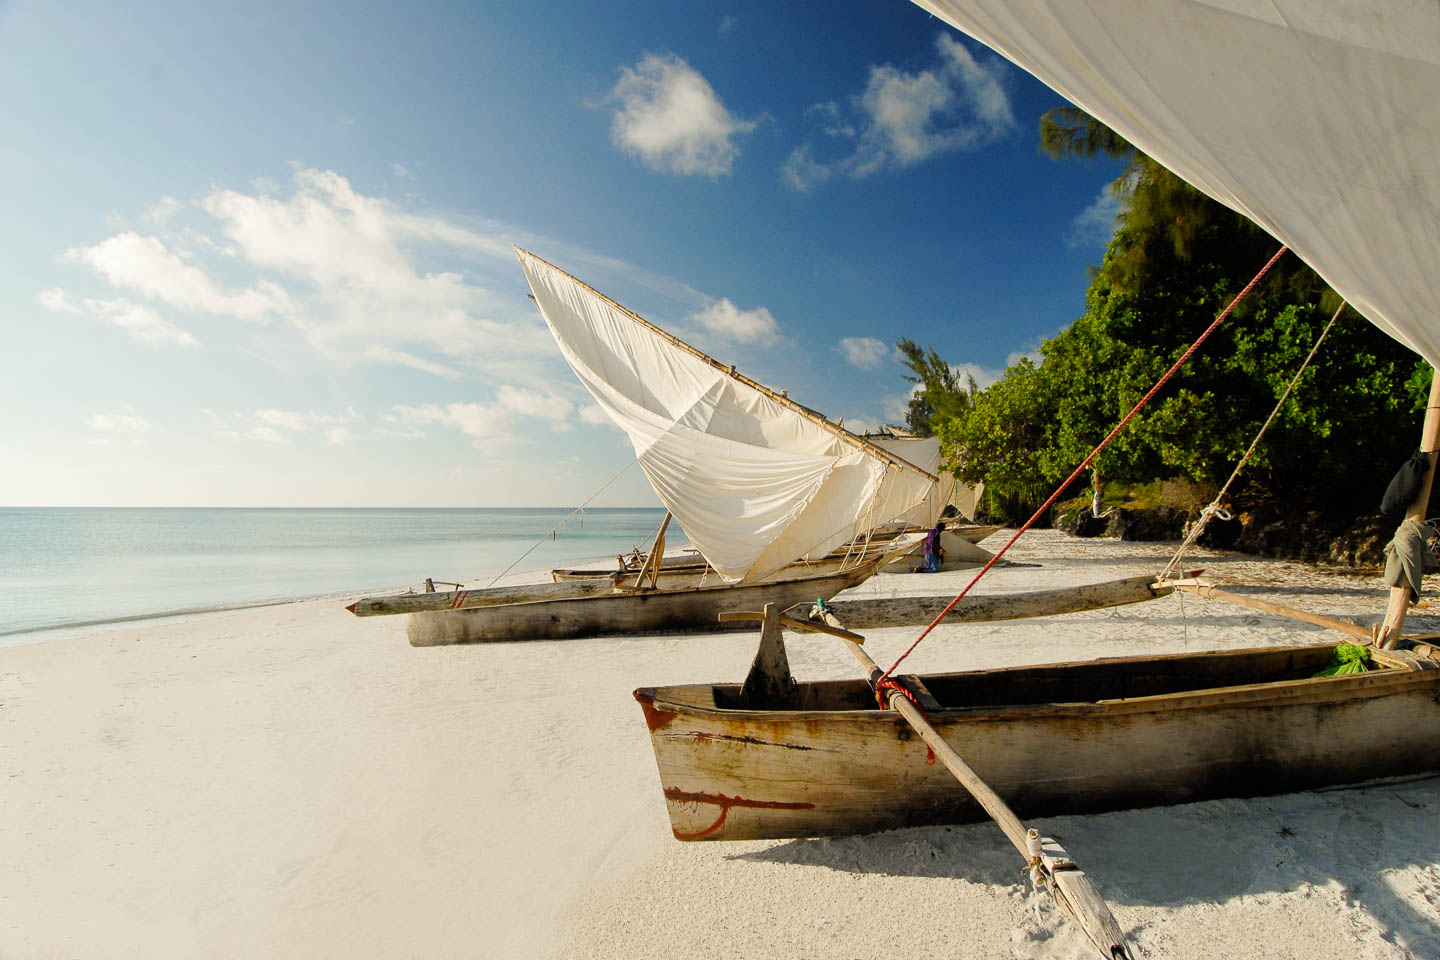 Indian Ocean Islands manta beach pemba island zanzibar tanzania boat dhow